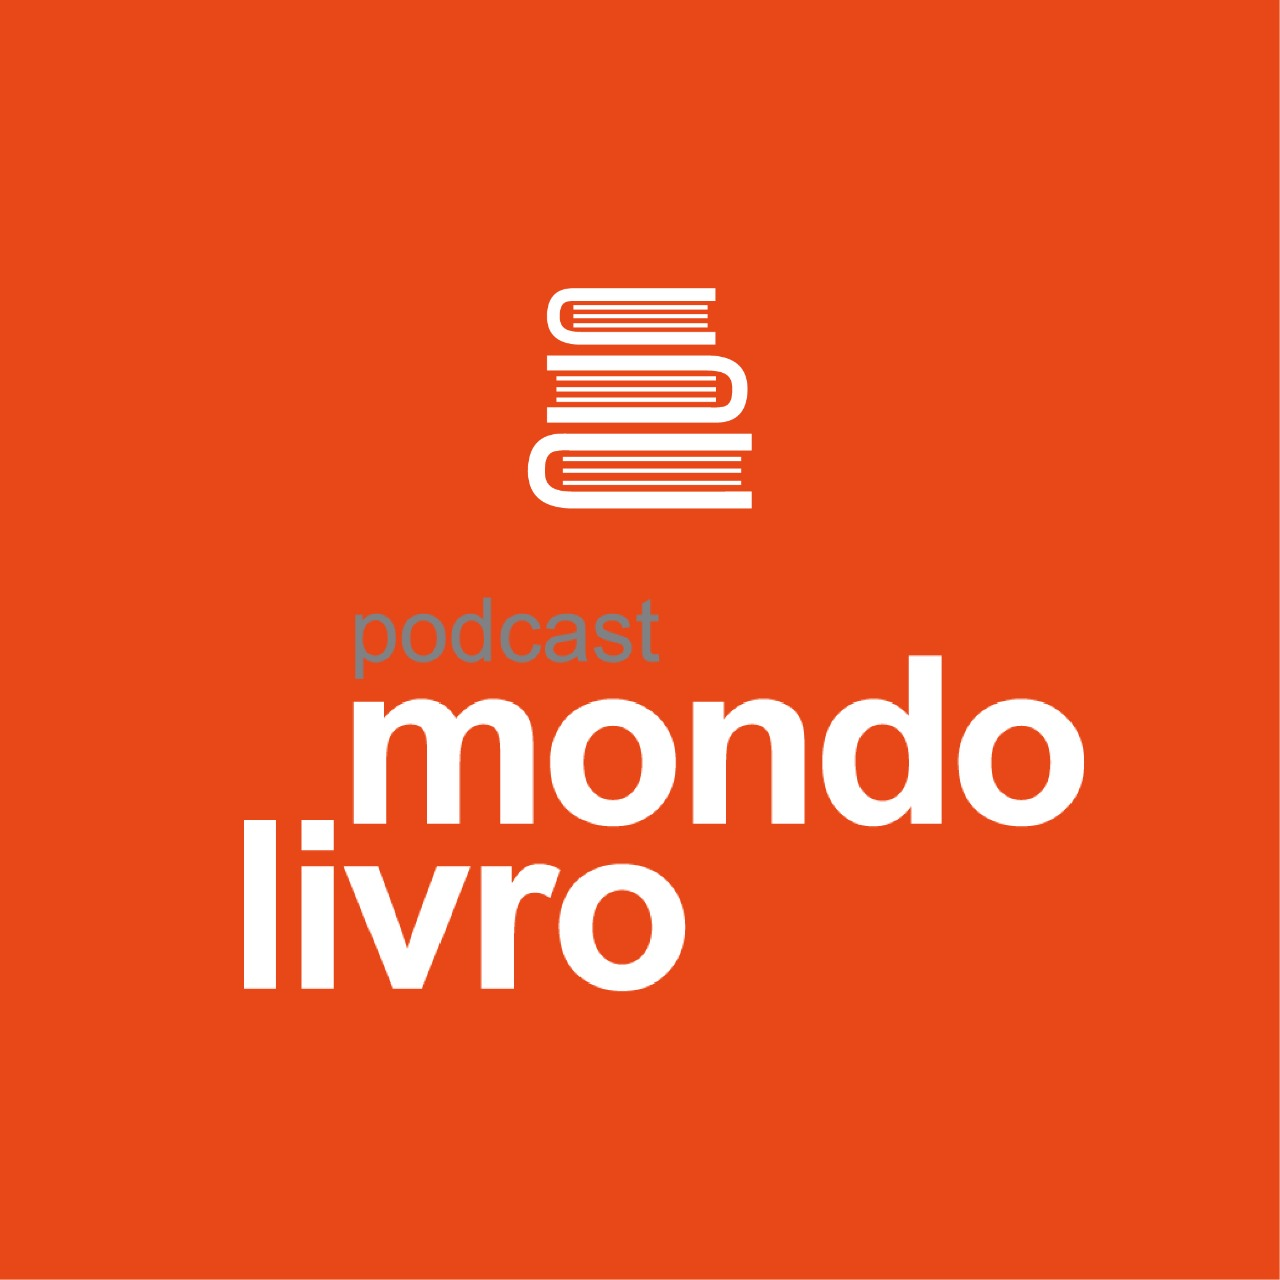 Mondolivro Podcast - Um podcast com Zuenir Ventura sobre Literatura e Comunicação